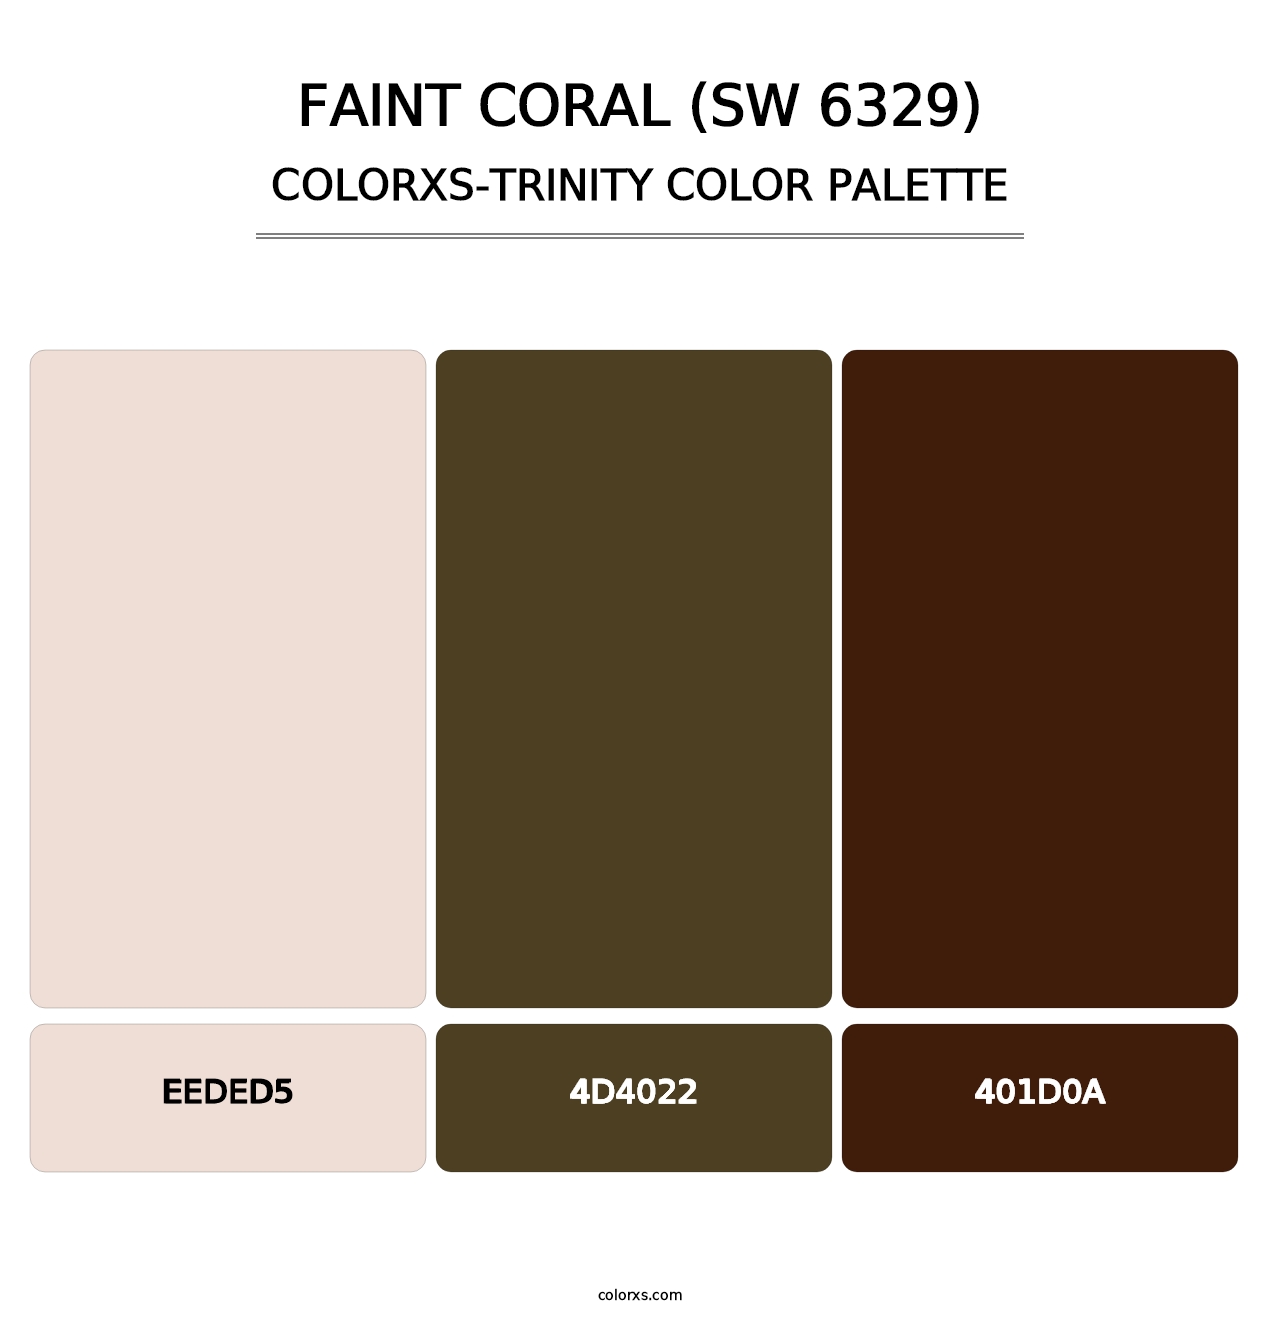 Faint Coral (SW 6329) - Colorxs Trinity Palette